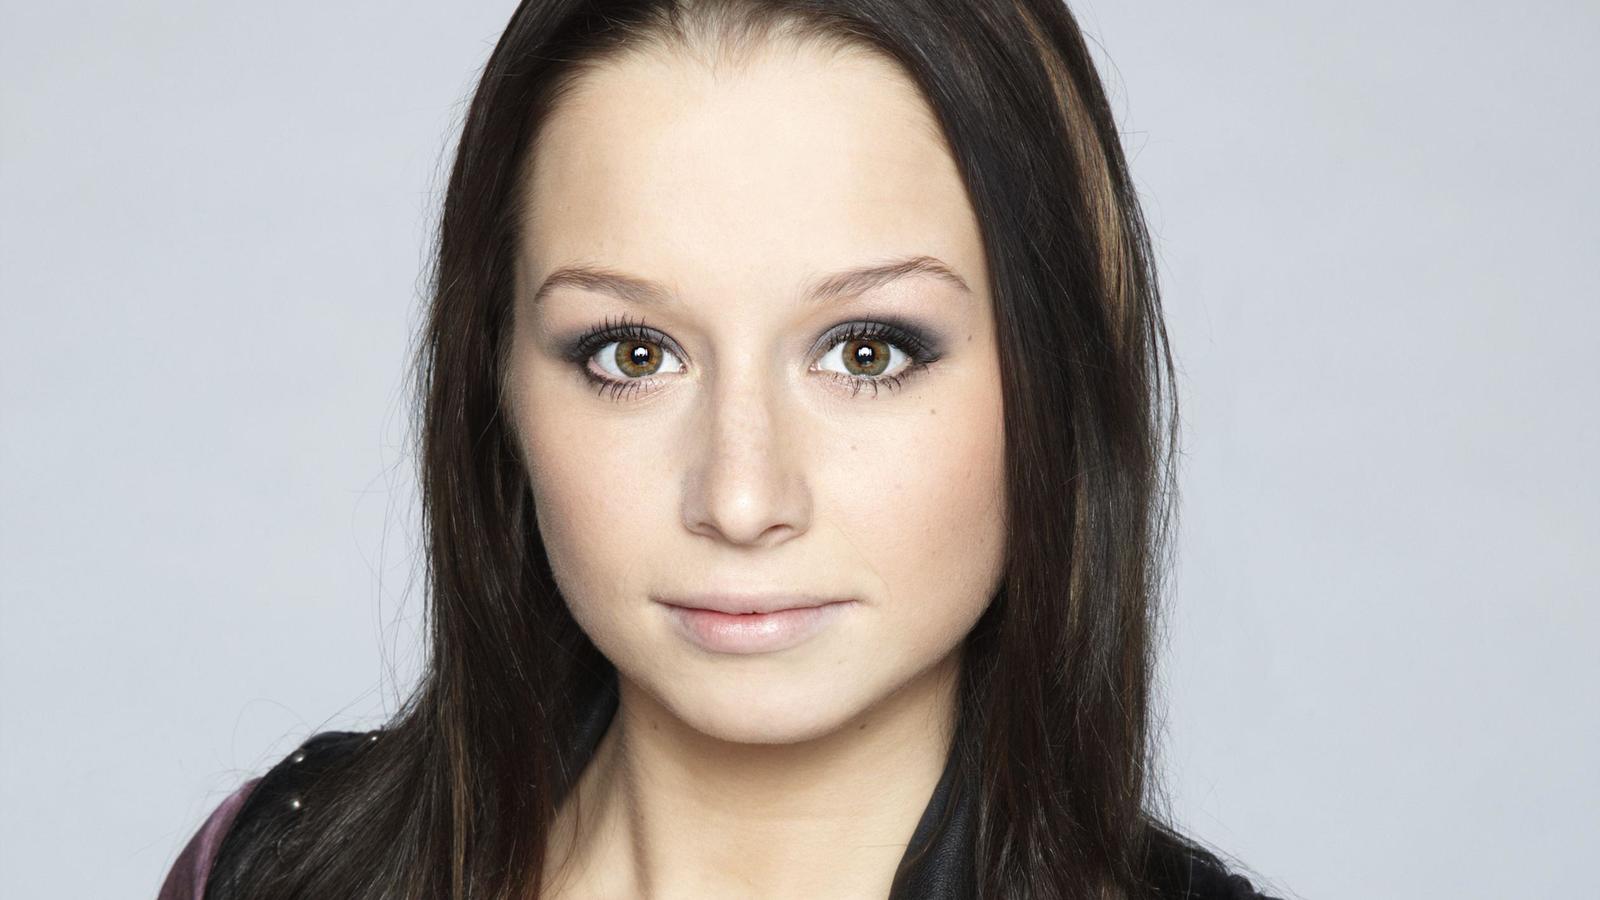 Senta-Sofia Delliponti spielt Tanja Seefeld. ACHTUNG: SPERRFRIST für Online-Nutzung bis einschl. DI., 01.05.2012!!!!